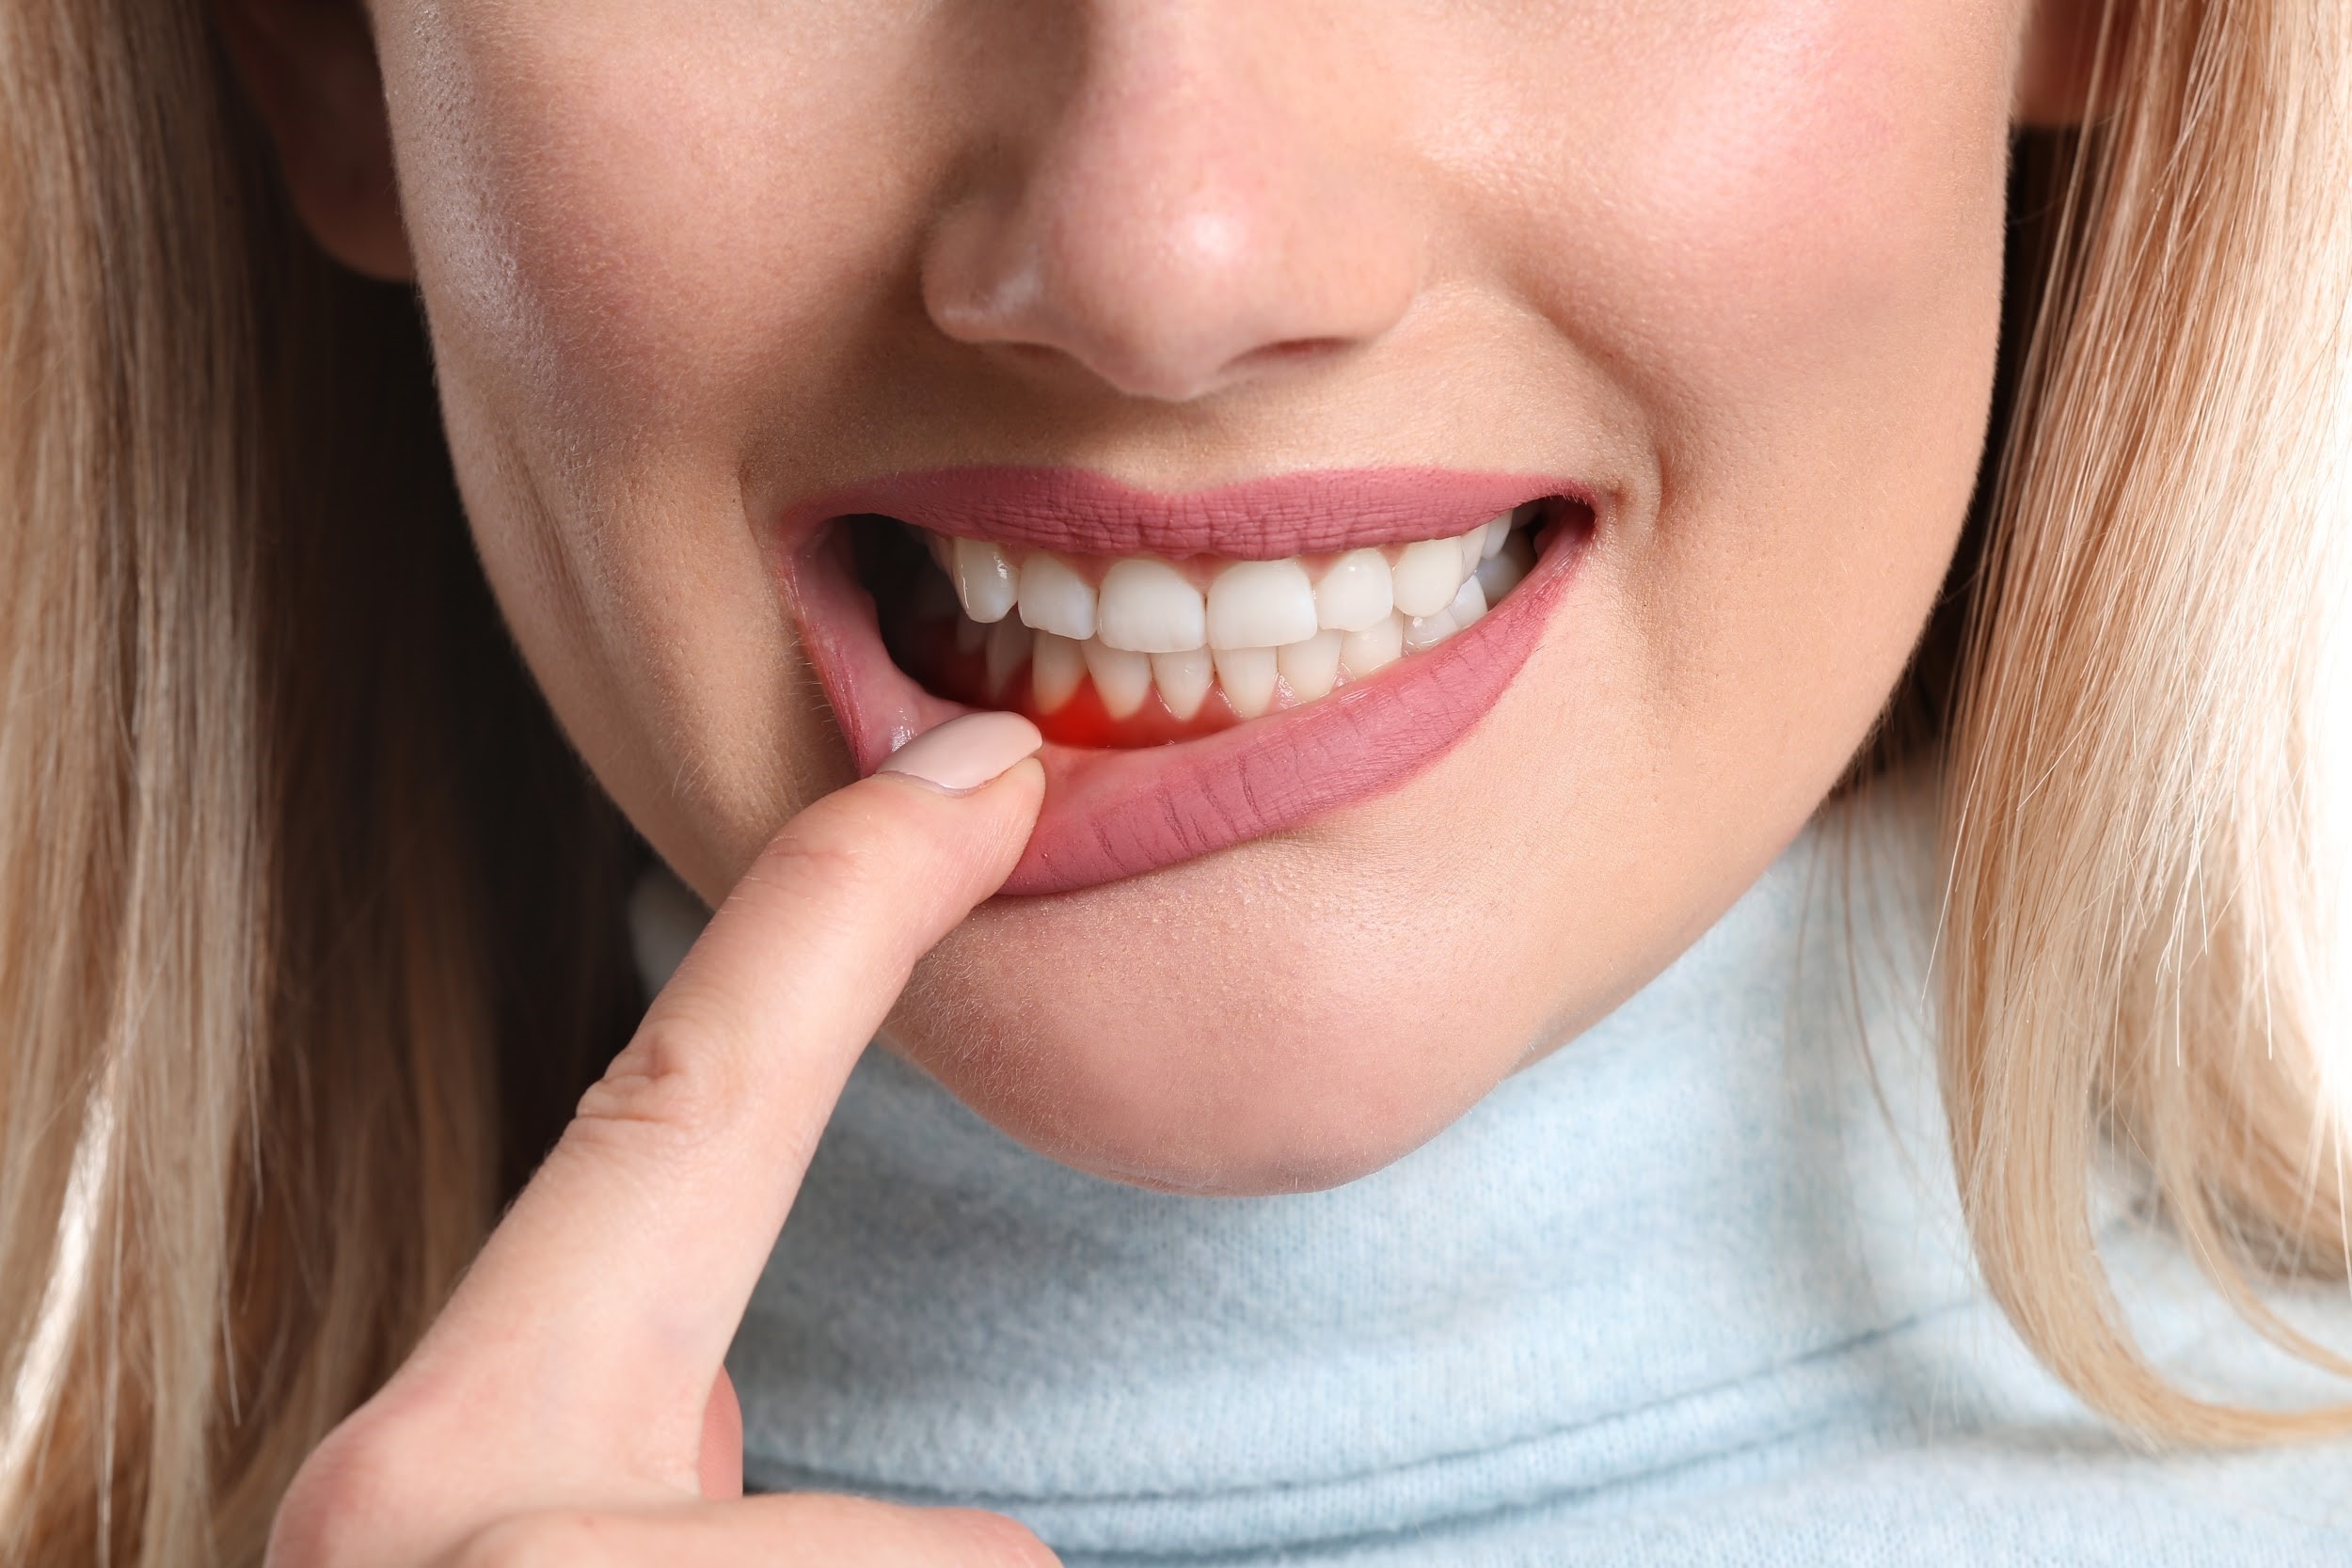 Viêm nha chu là bệnh nguy hiểm về răng miệng, có thể ảnh hưởng toàn bộ cấu trúc răng tác động nghiêm trọng đến sức khỏe răng miệng của người bệnh.